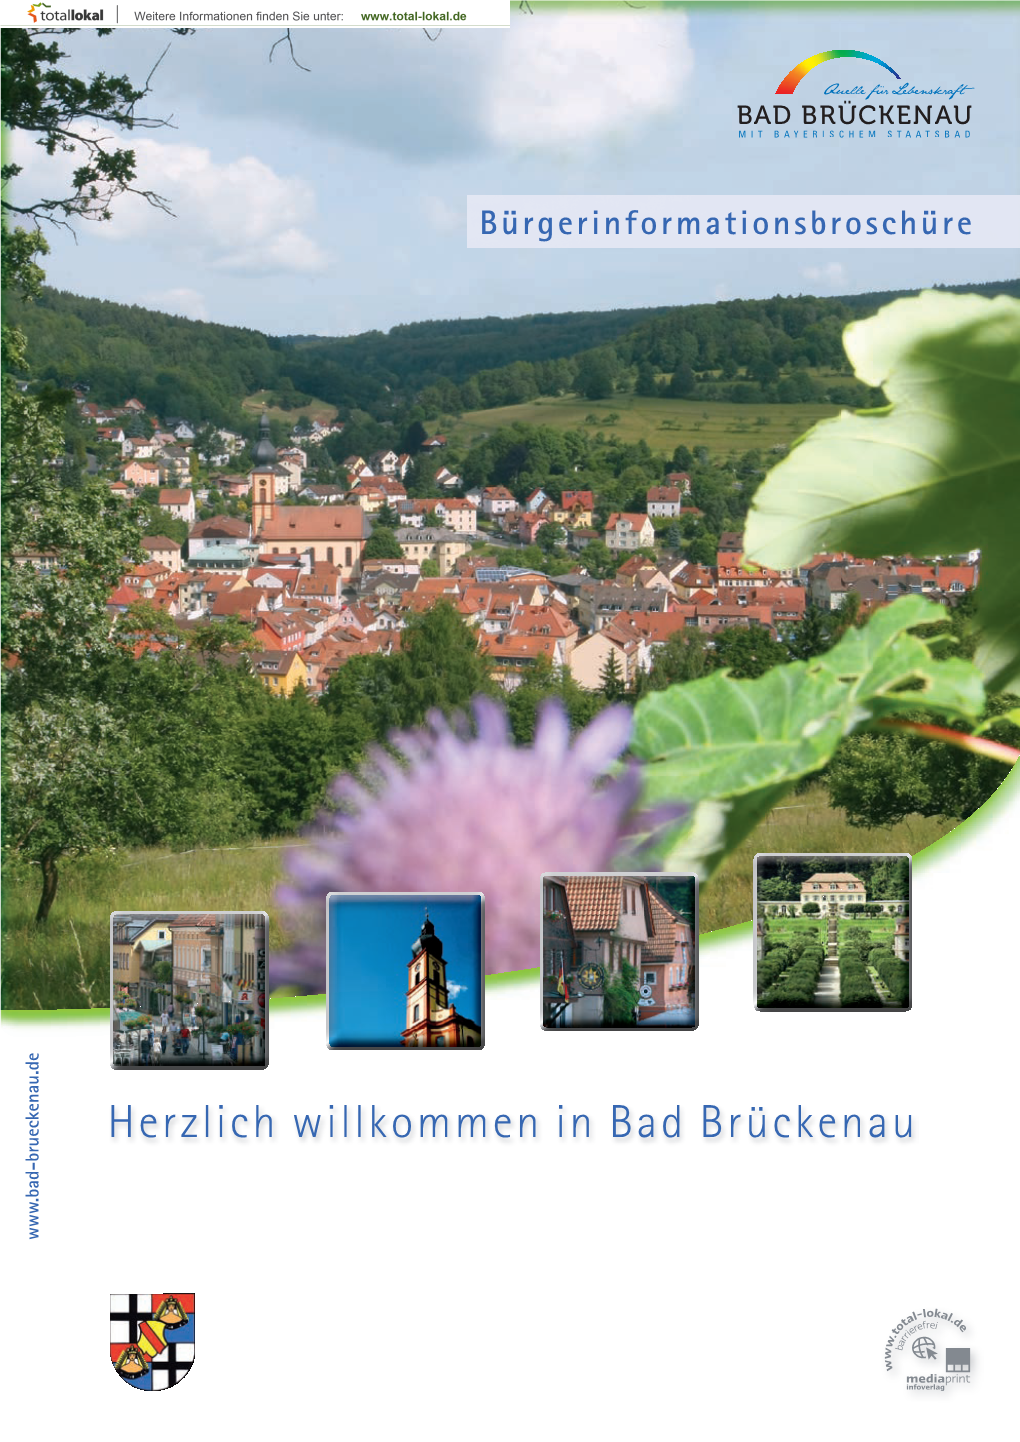 Herzlich Willkommen in Bad Brückenau